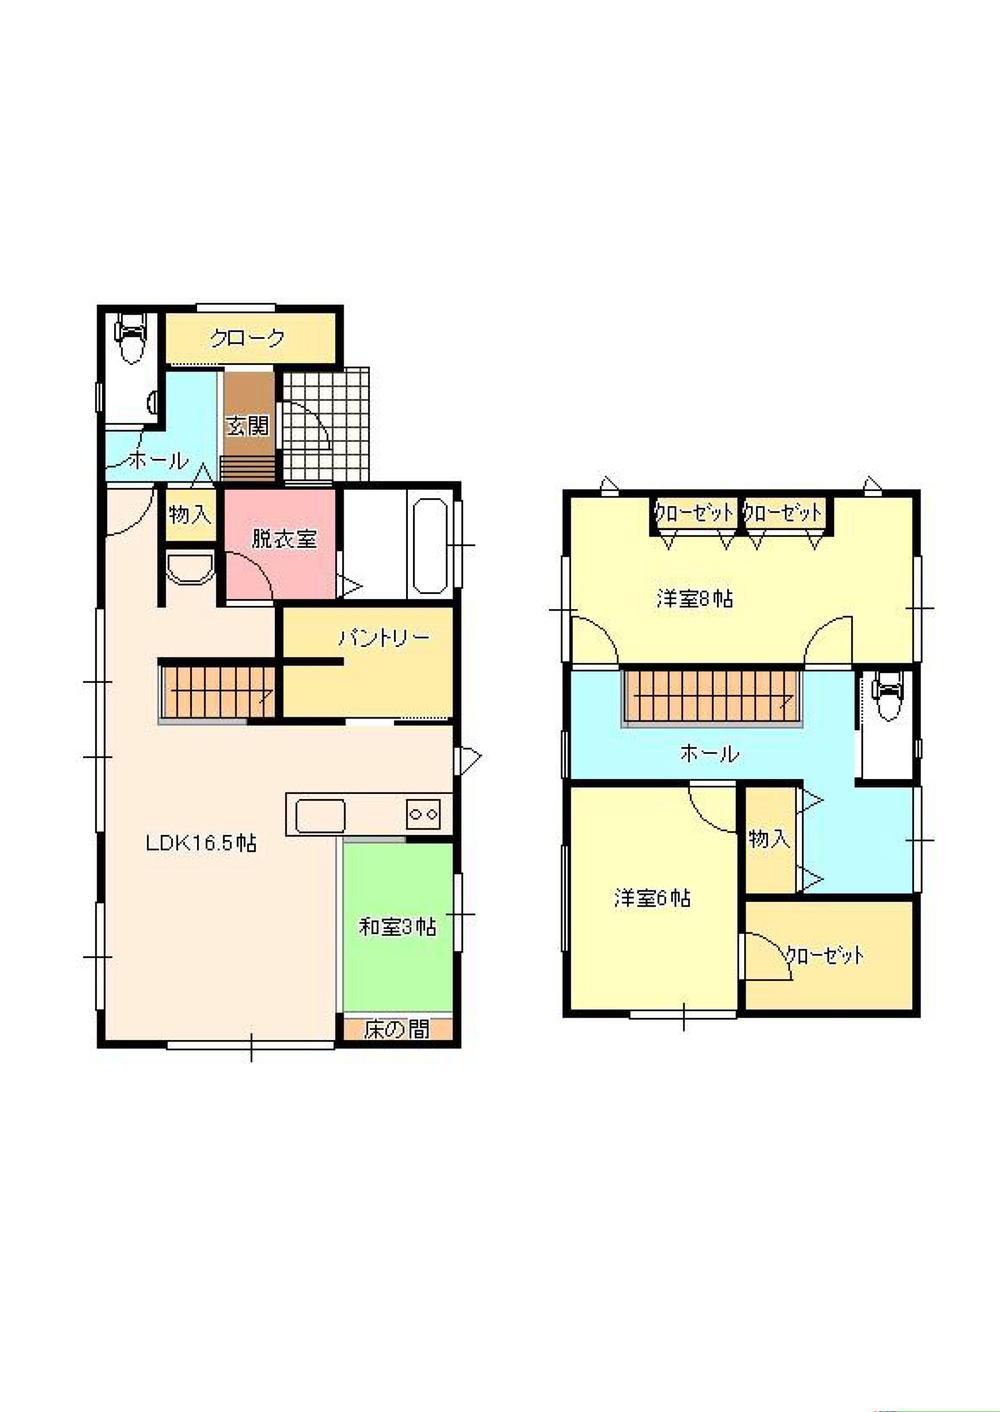 Floor plan. 23.8 million yen, 2LDK, Land area 156.12 sq m , Building area 100.19 sq m